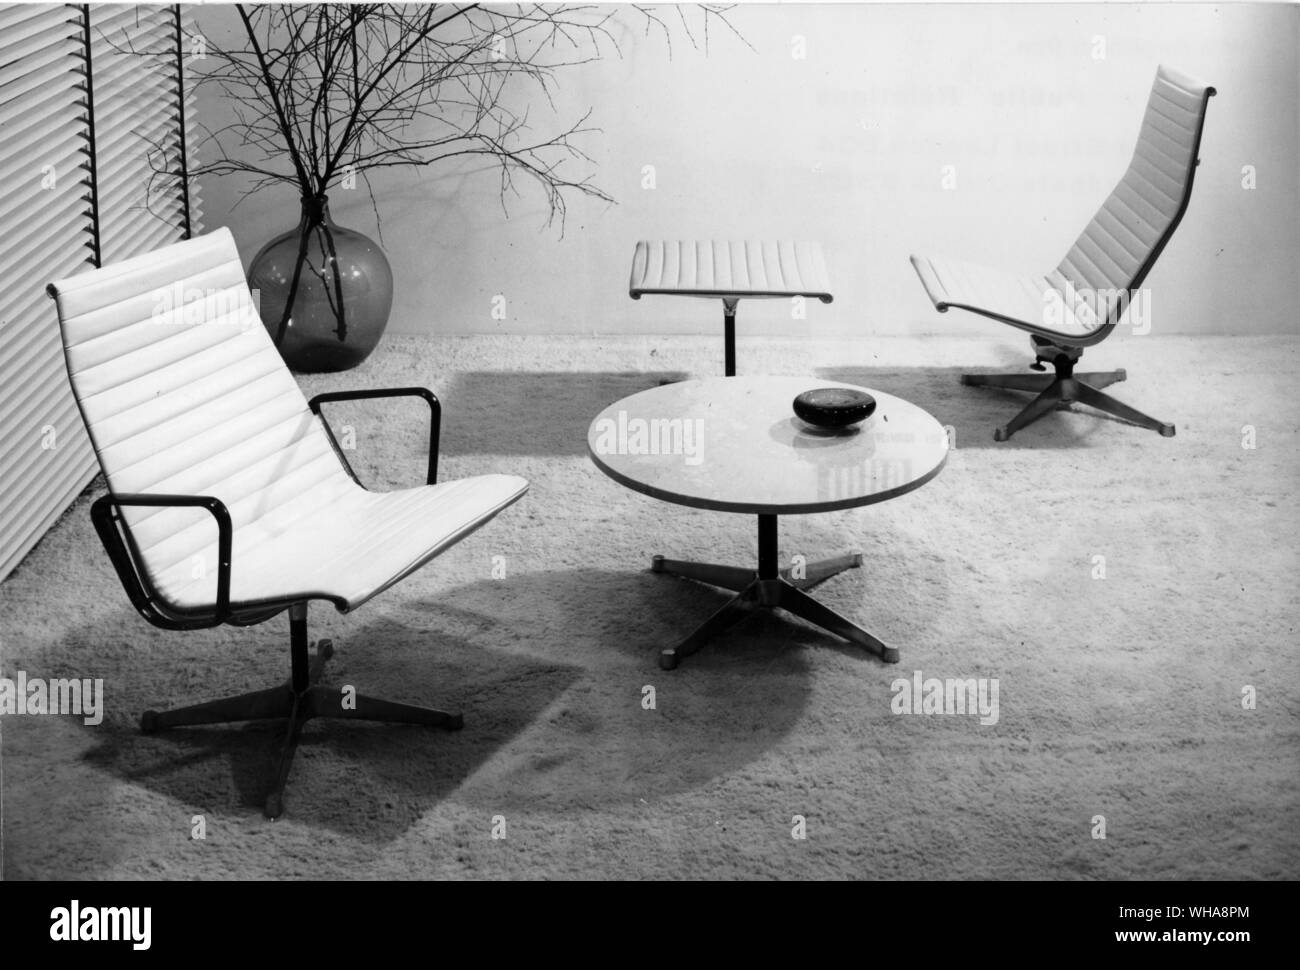 Il gruppo di alluminio da Hille. Il gruppo di alluminio è il Charles Eames design oggi essendo realizzato da Hille di Londra sotto licenza da Herman Miller degli Stati Uniti. Il design sottile e linee delicate dei telai di sedie sono in alluminio Foto Stock